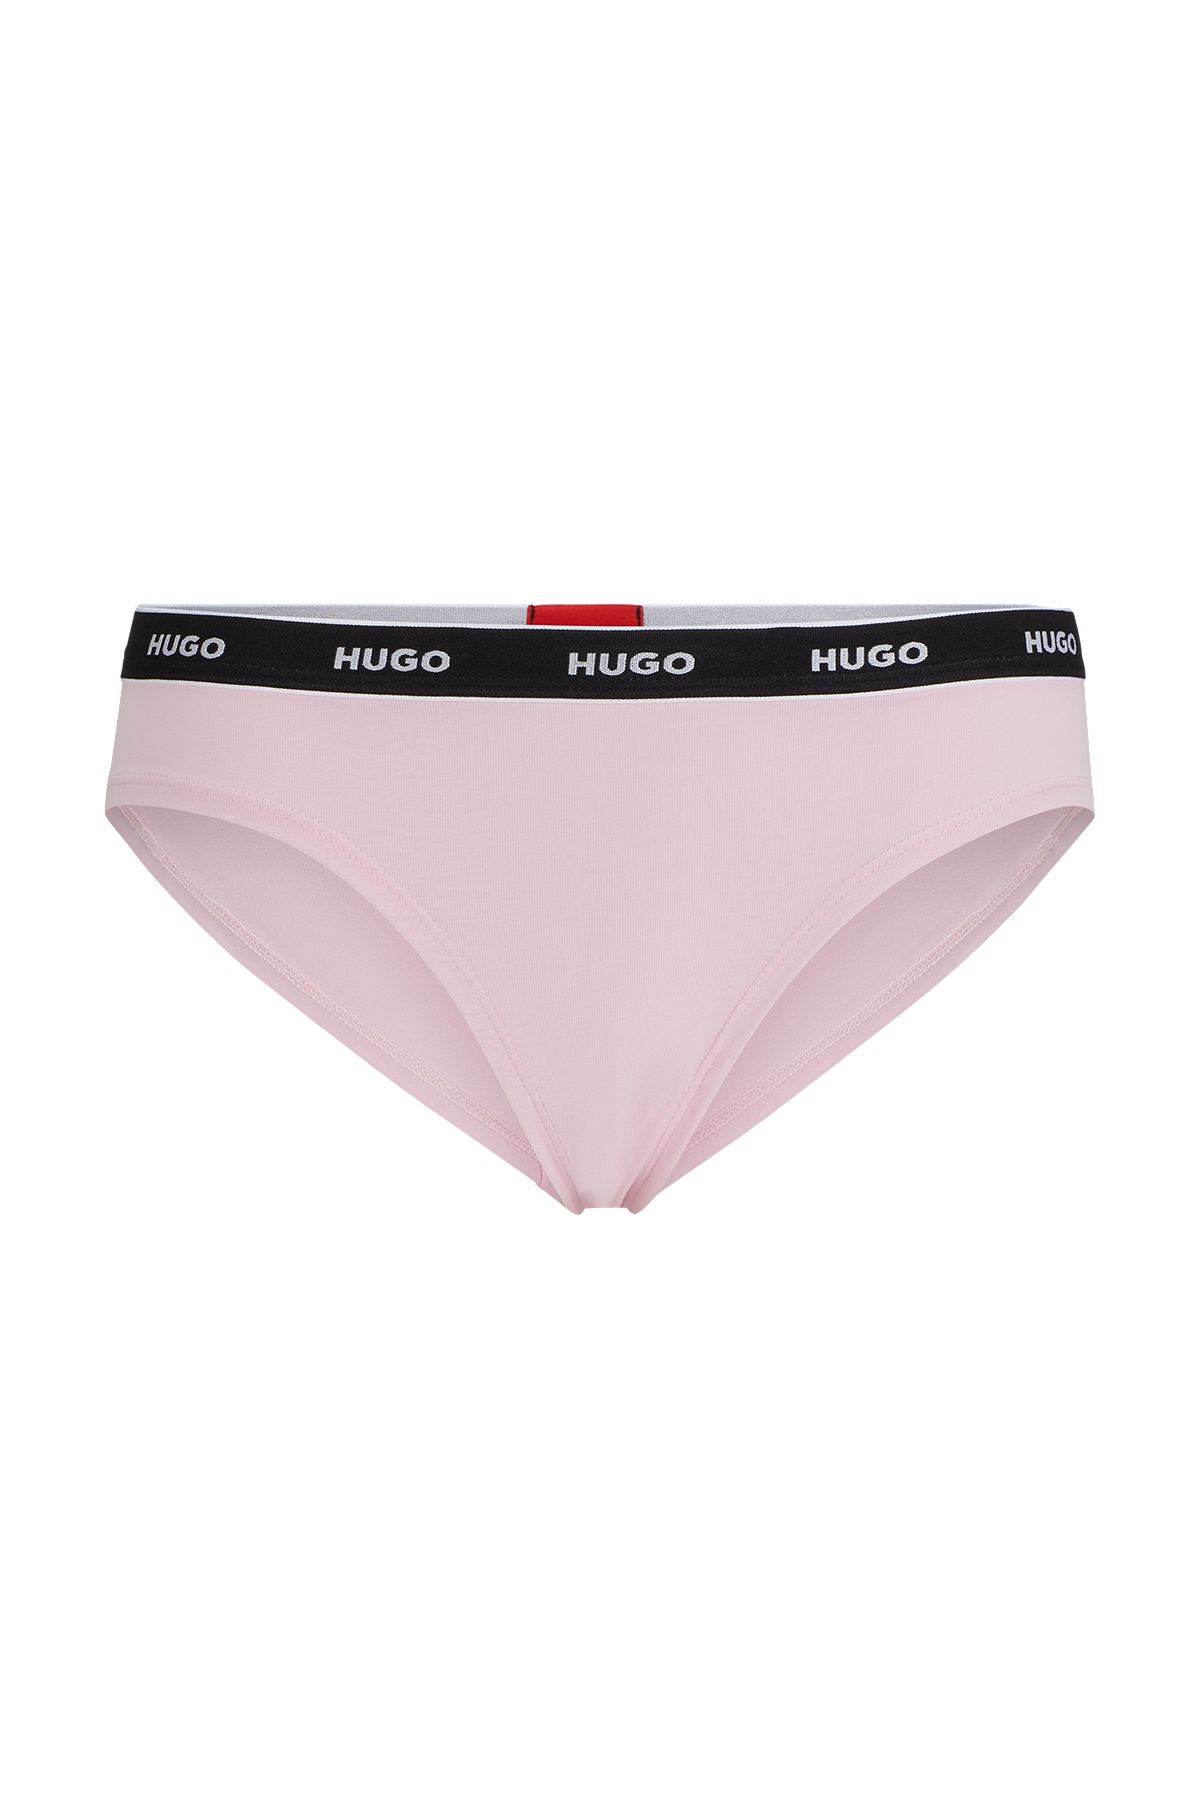 Stretch-cotton regular-rise briefs with logo waistband, light pink